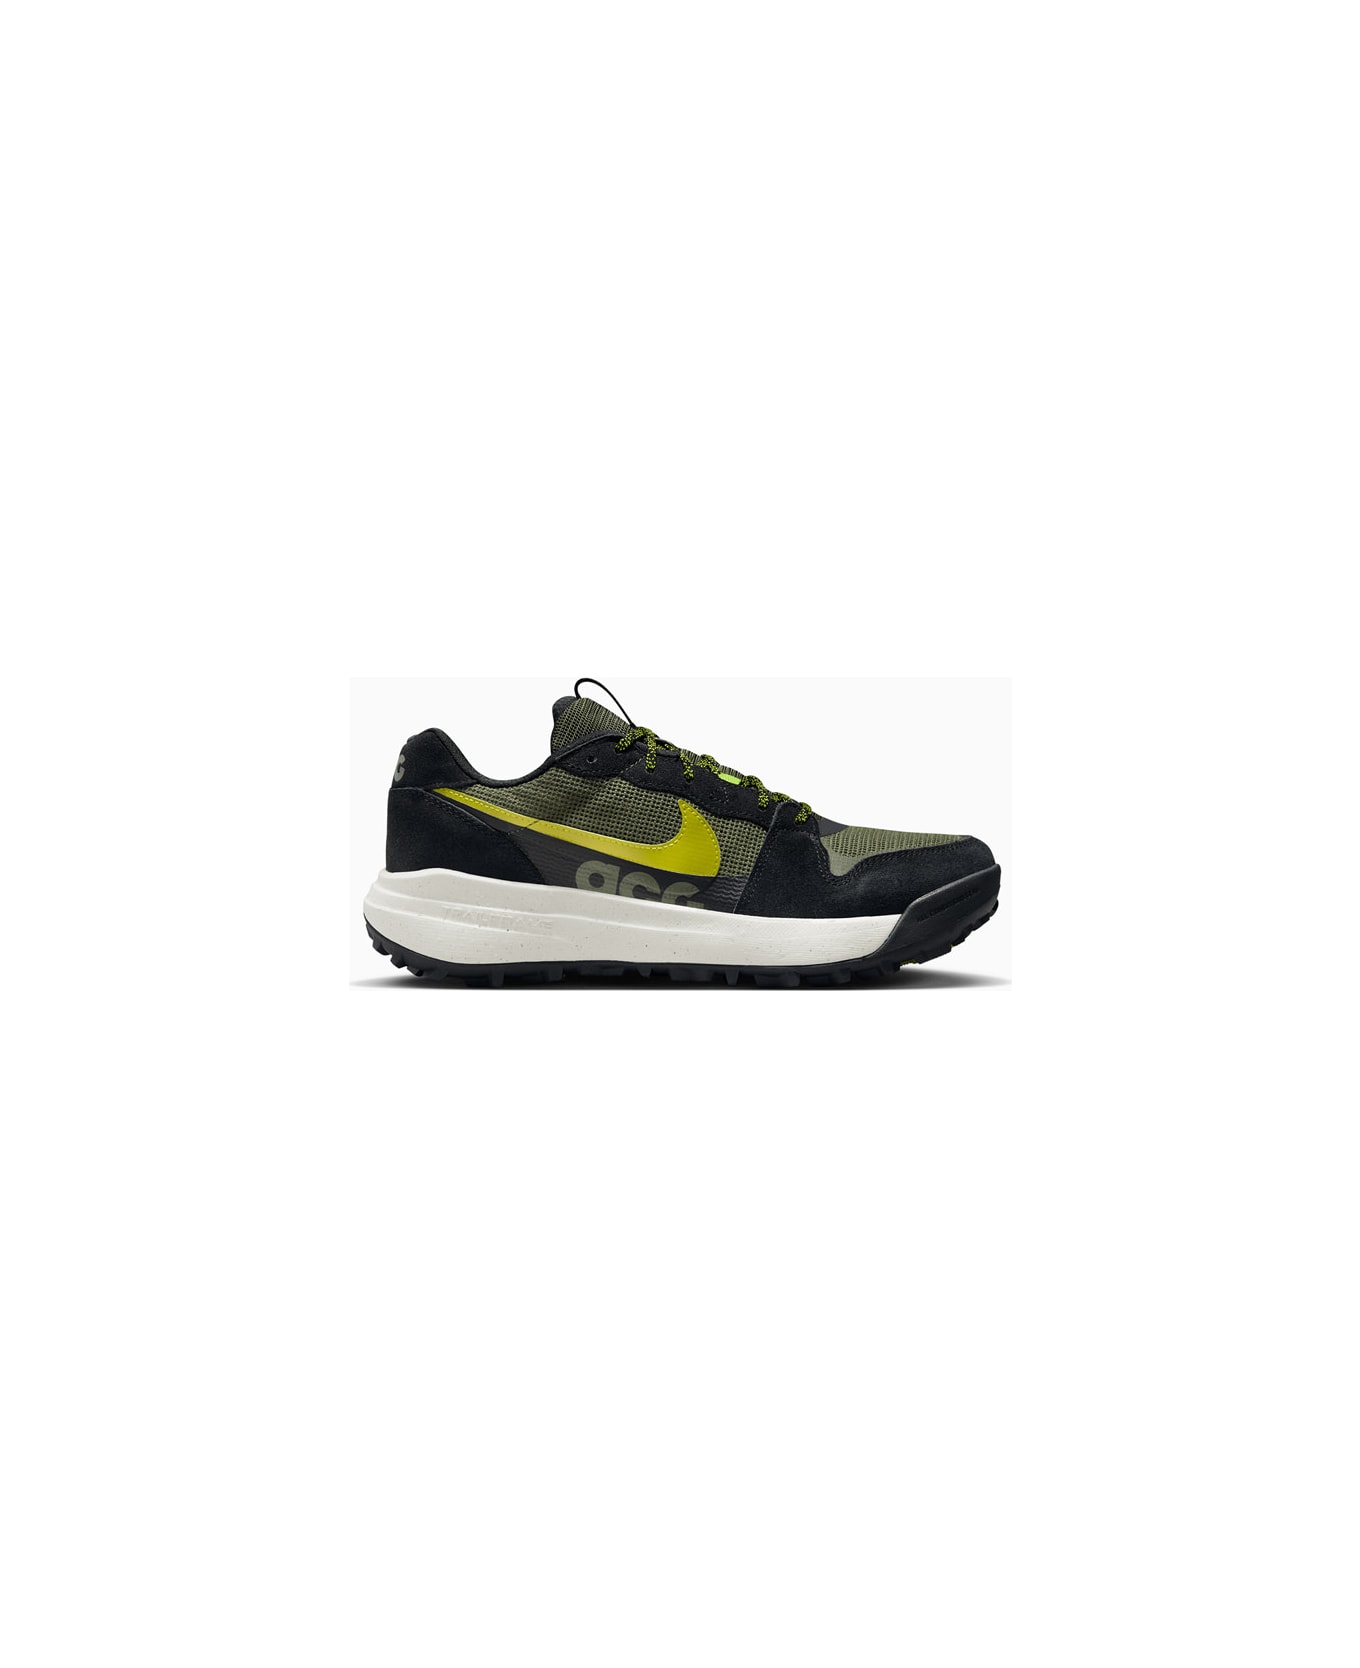 Nike Acg Lowcate Sneakers Dm8019-300 - Green